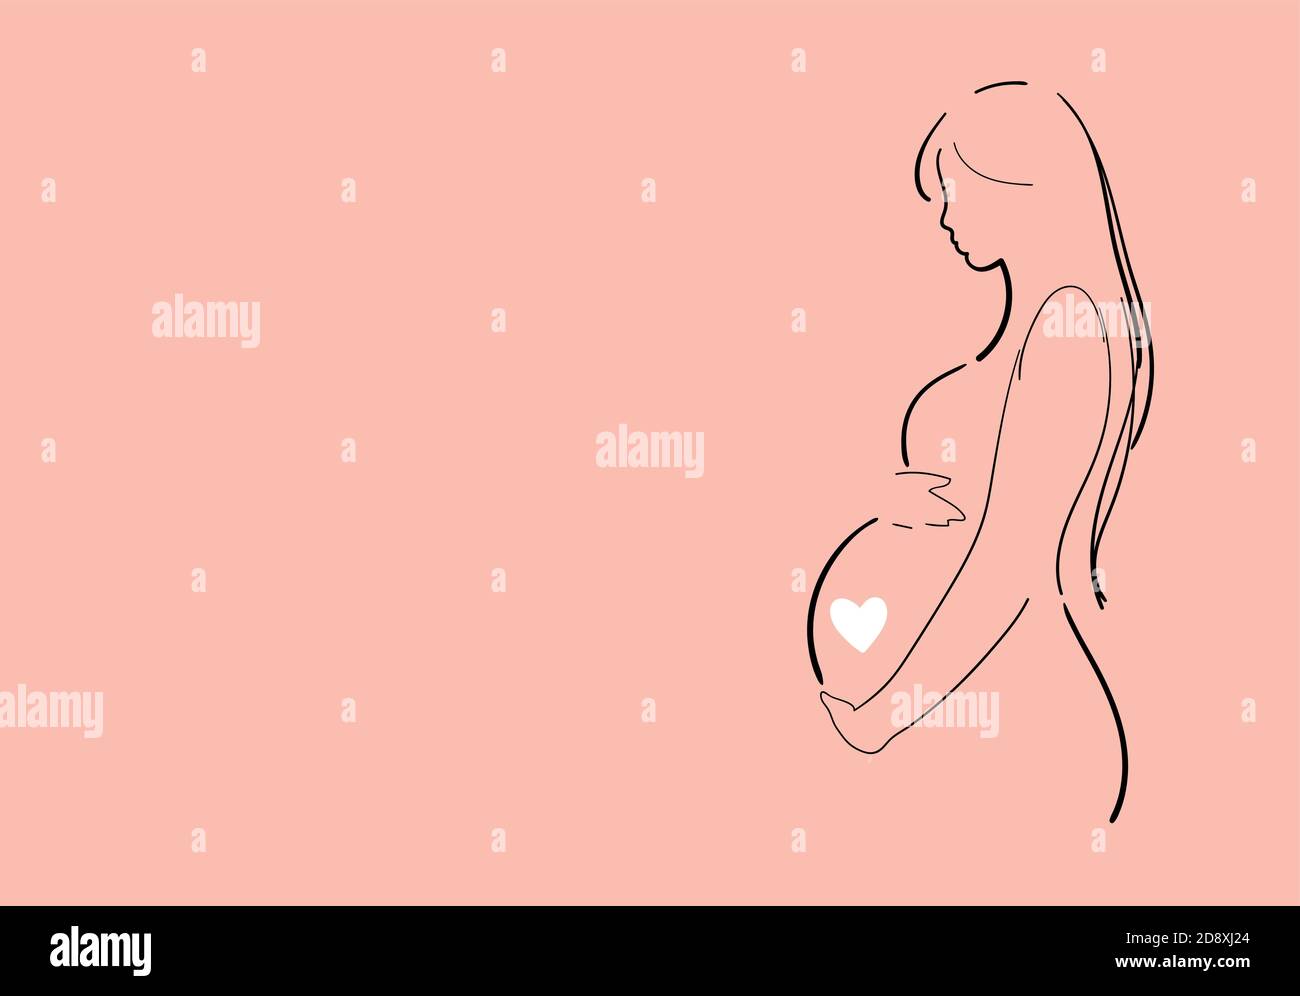 Bandera moderna sobre el embarazo y la maternidad, dibujo de línea. Cartel con una hermosa mujer embarazada joven con lugar para texto. Diseño minimalista, dibujo vectorial de dibujos animados planos Ilustración del Vector